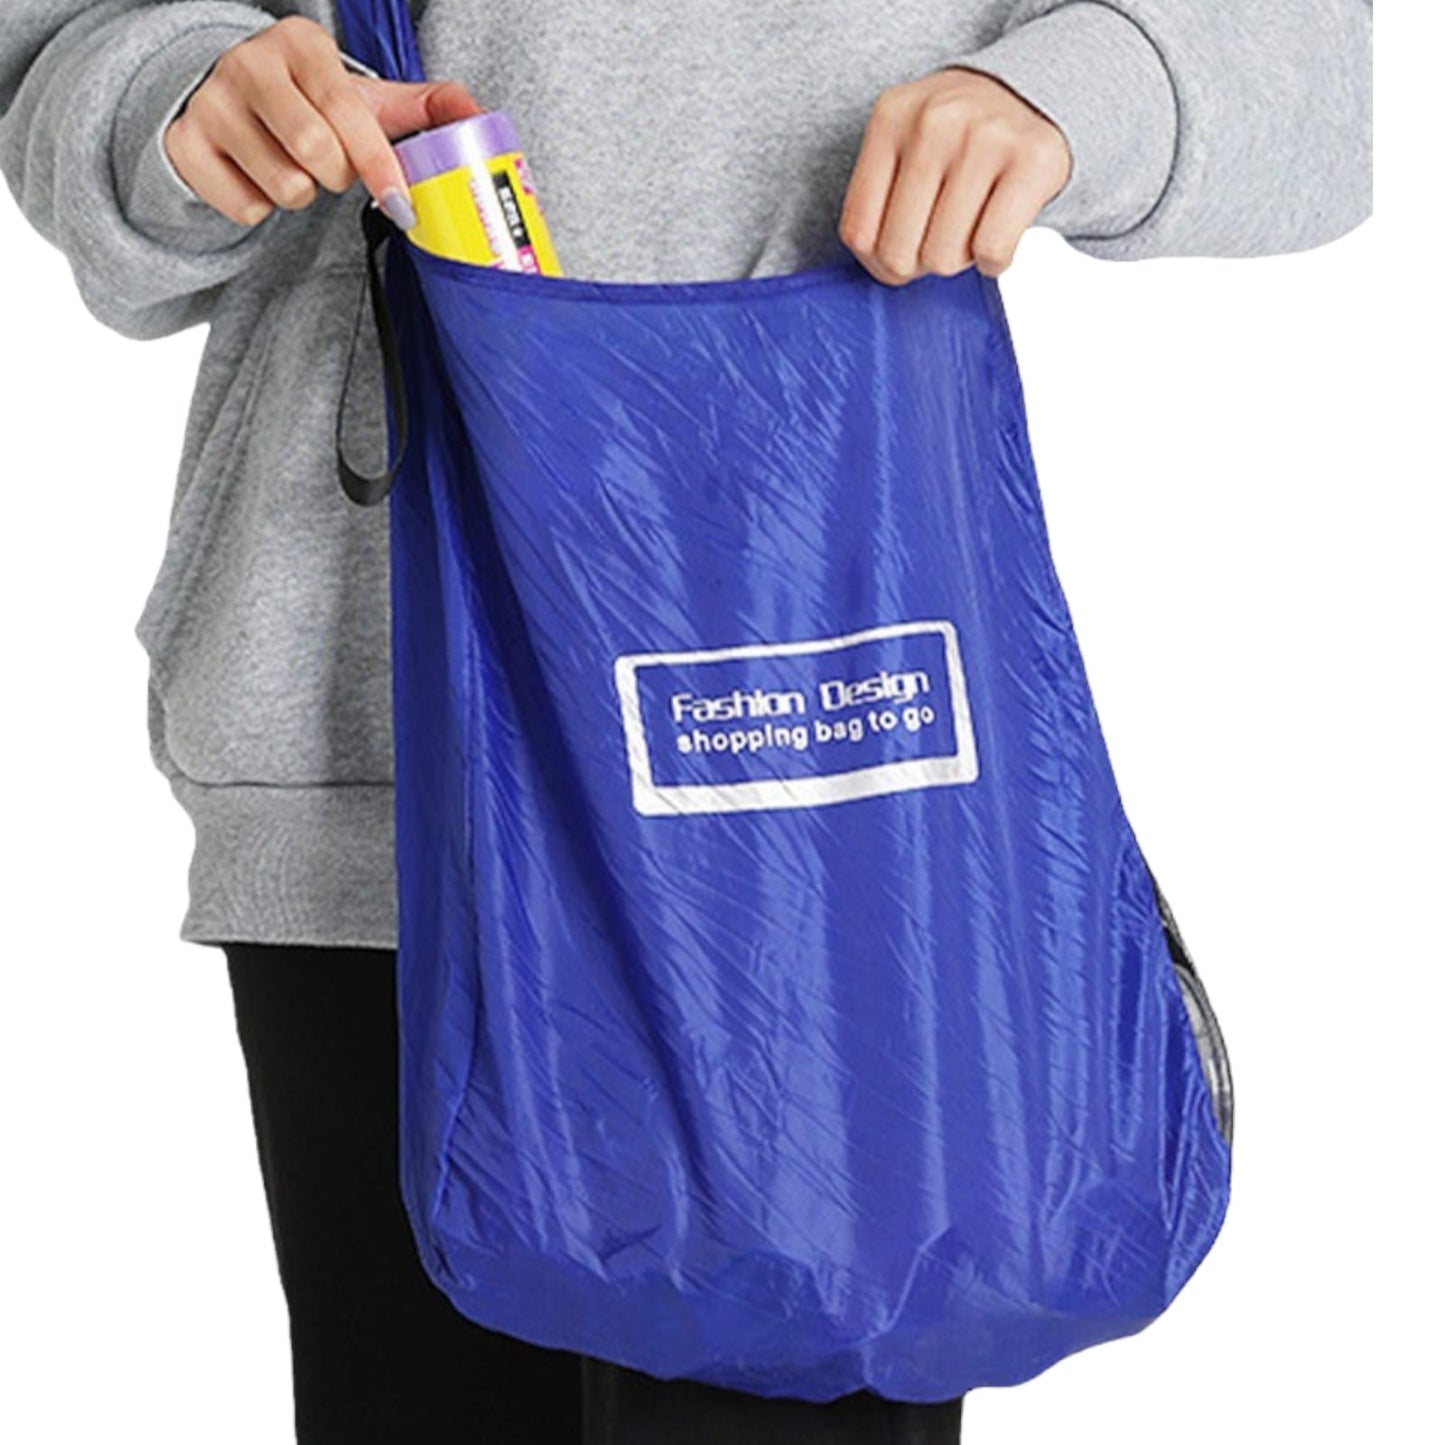 Shopping bag - Reusable , portable and convenient